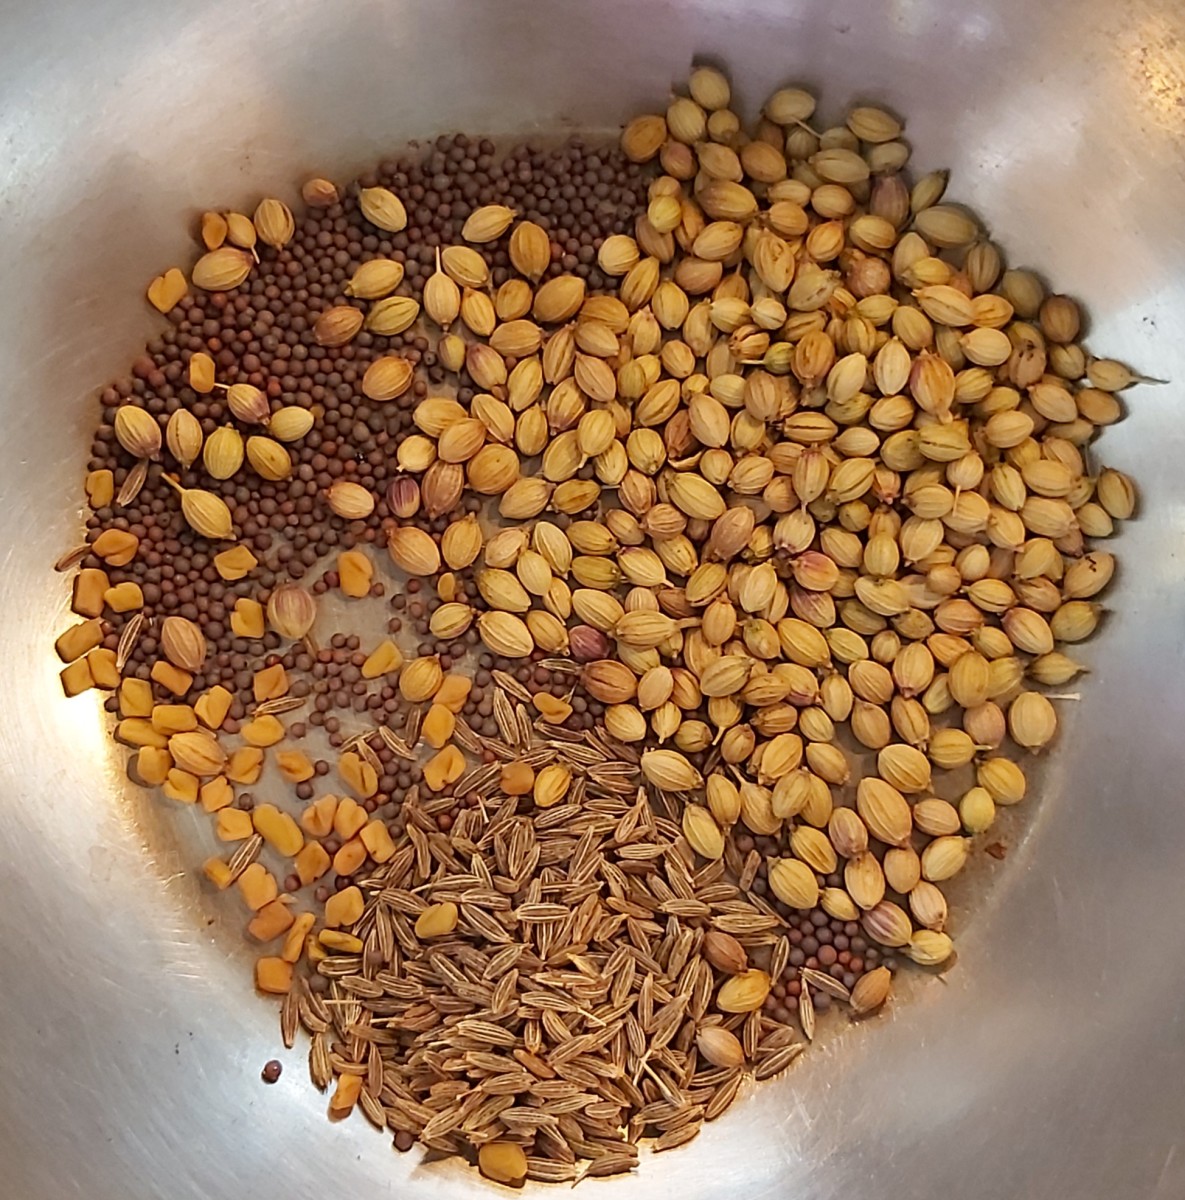 In a frying pan, add 1/2 teaspoon mustard seeds, 1 teaspoon cumin seeds, 2 teaspoon coriander seeds and 1/4 teaspoon fenugreek seeds.